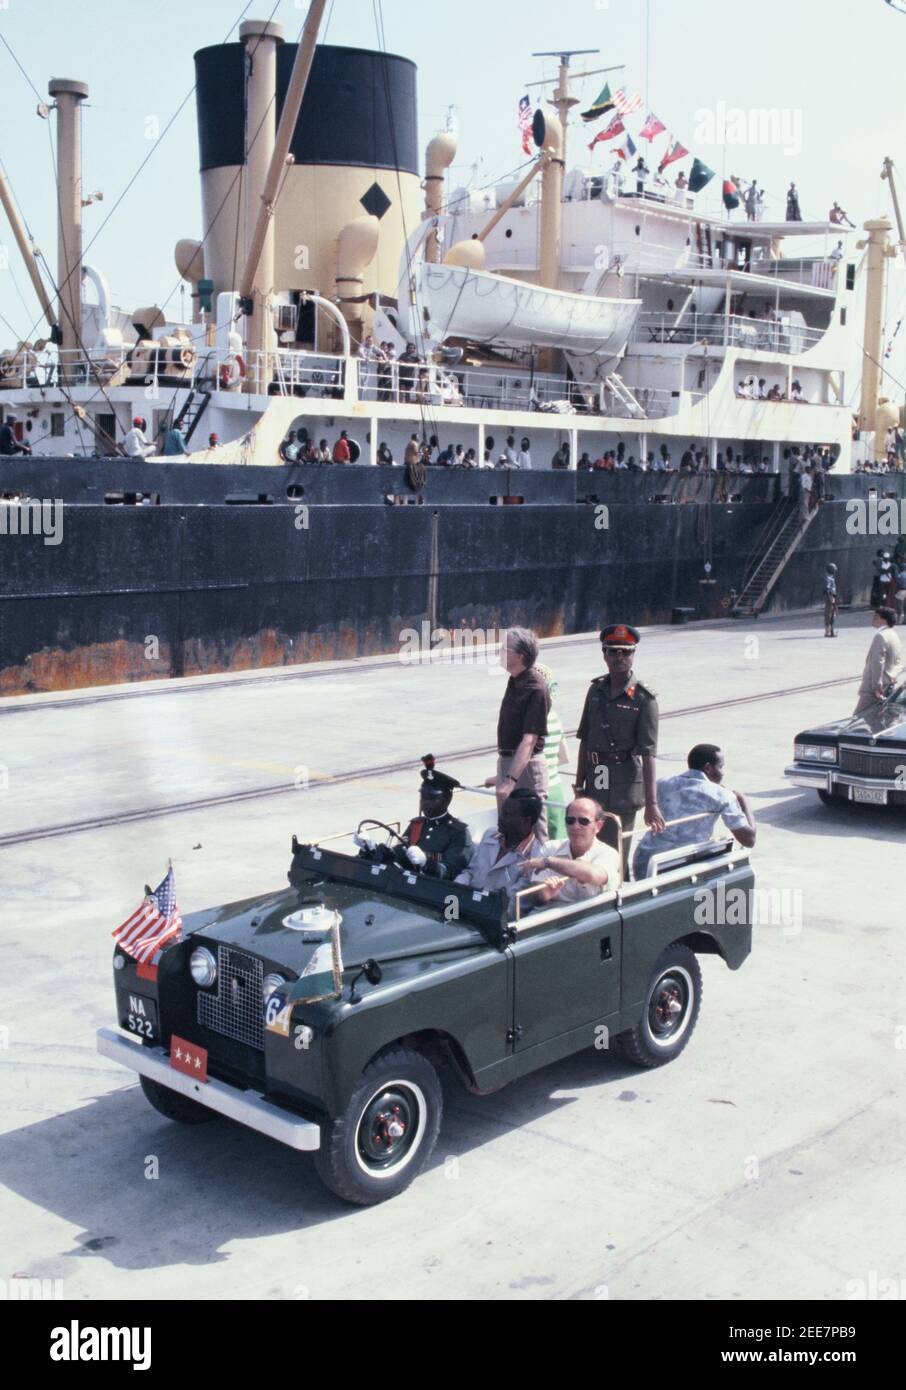 Le président Jimmy carter visite le port de Lagos le Nigeria.in avril 1978 Photographie par Dennis Brack Banque D'Images